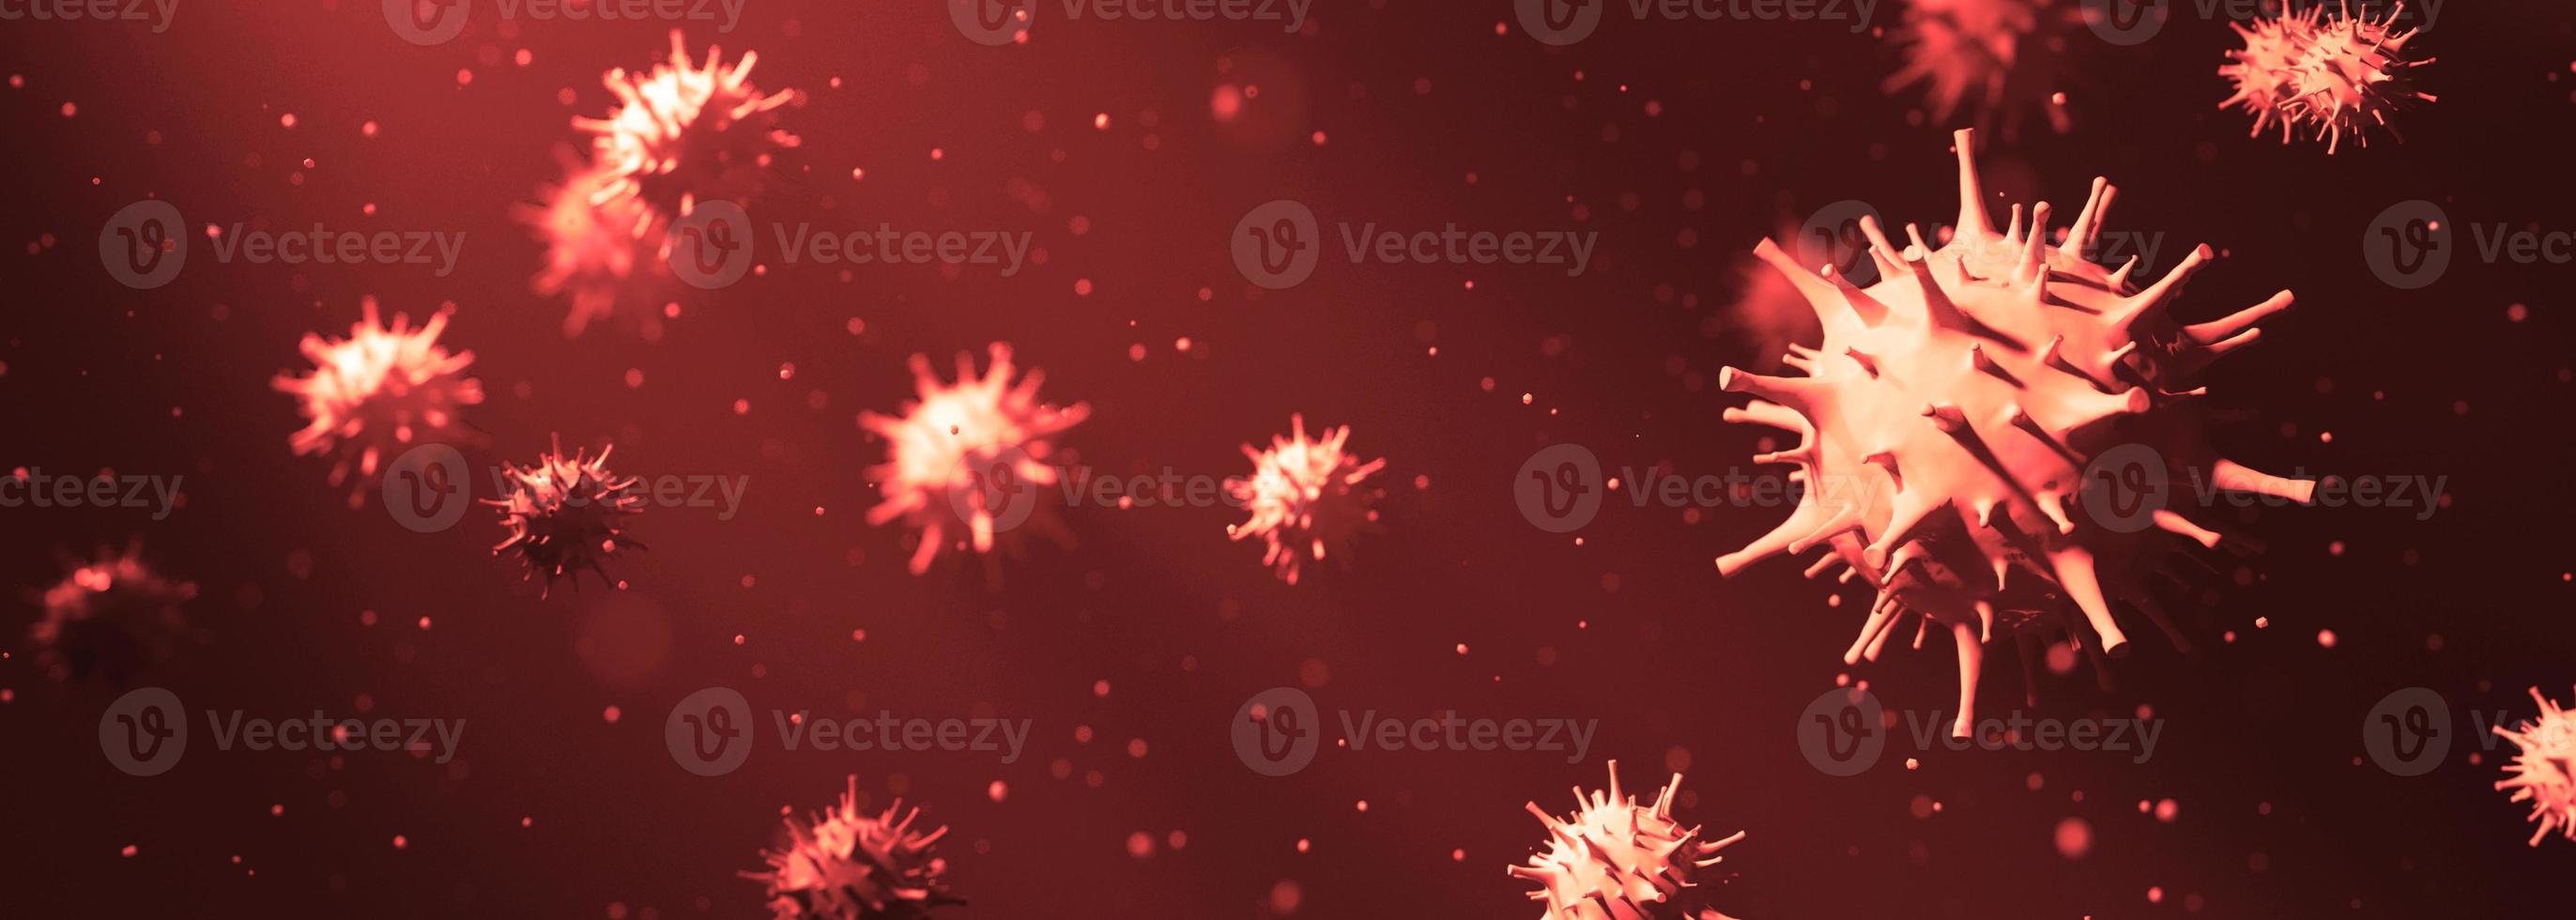 Ausbruch des Coronavirus, mikroskopische Ansicht von Influenzaviruszellen. 3D-Darstellung foto